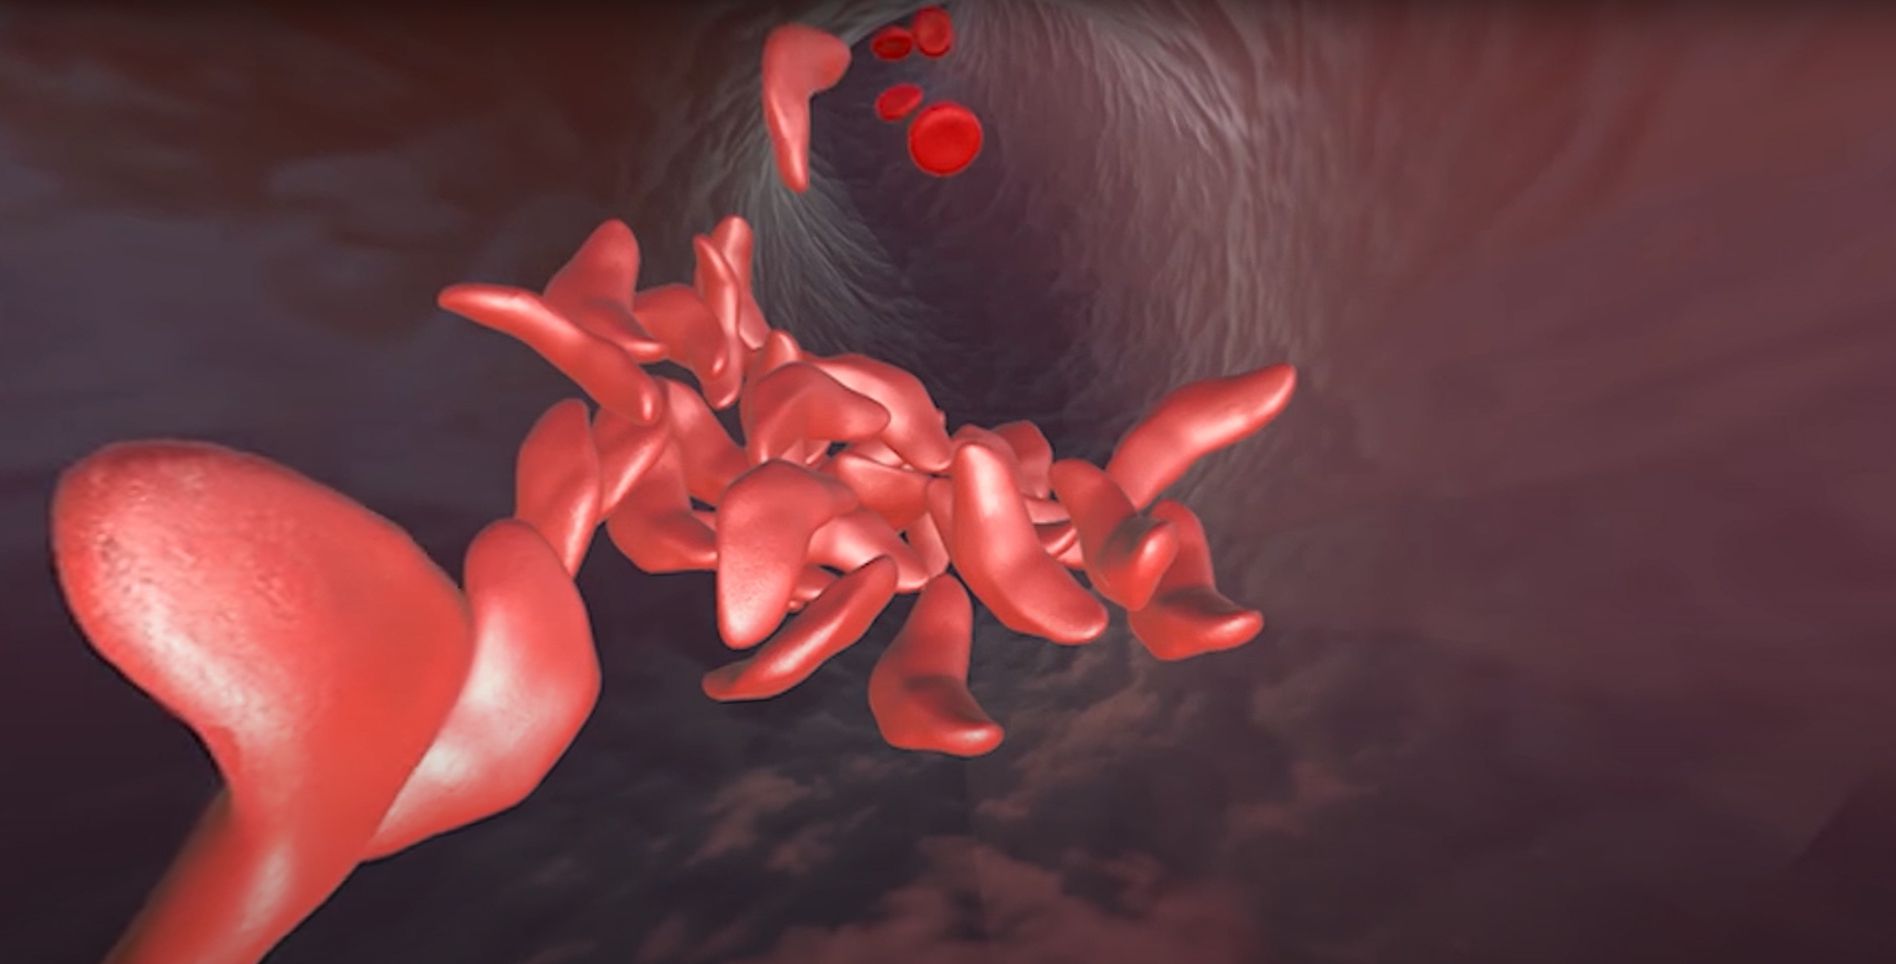 Terapia CRISPR para la anemia de células falciformes. Ilustración de la anemia de células falciformes con glóbulos rojos afectados en un vaso sanguíneo